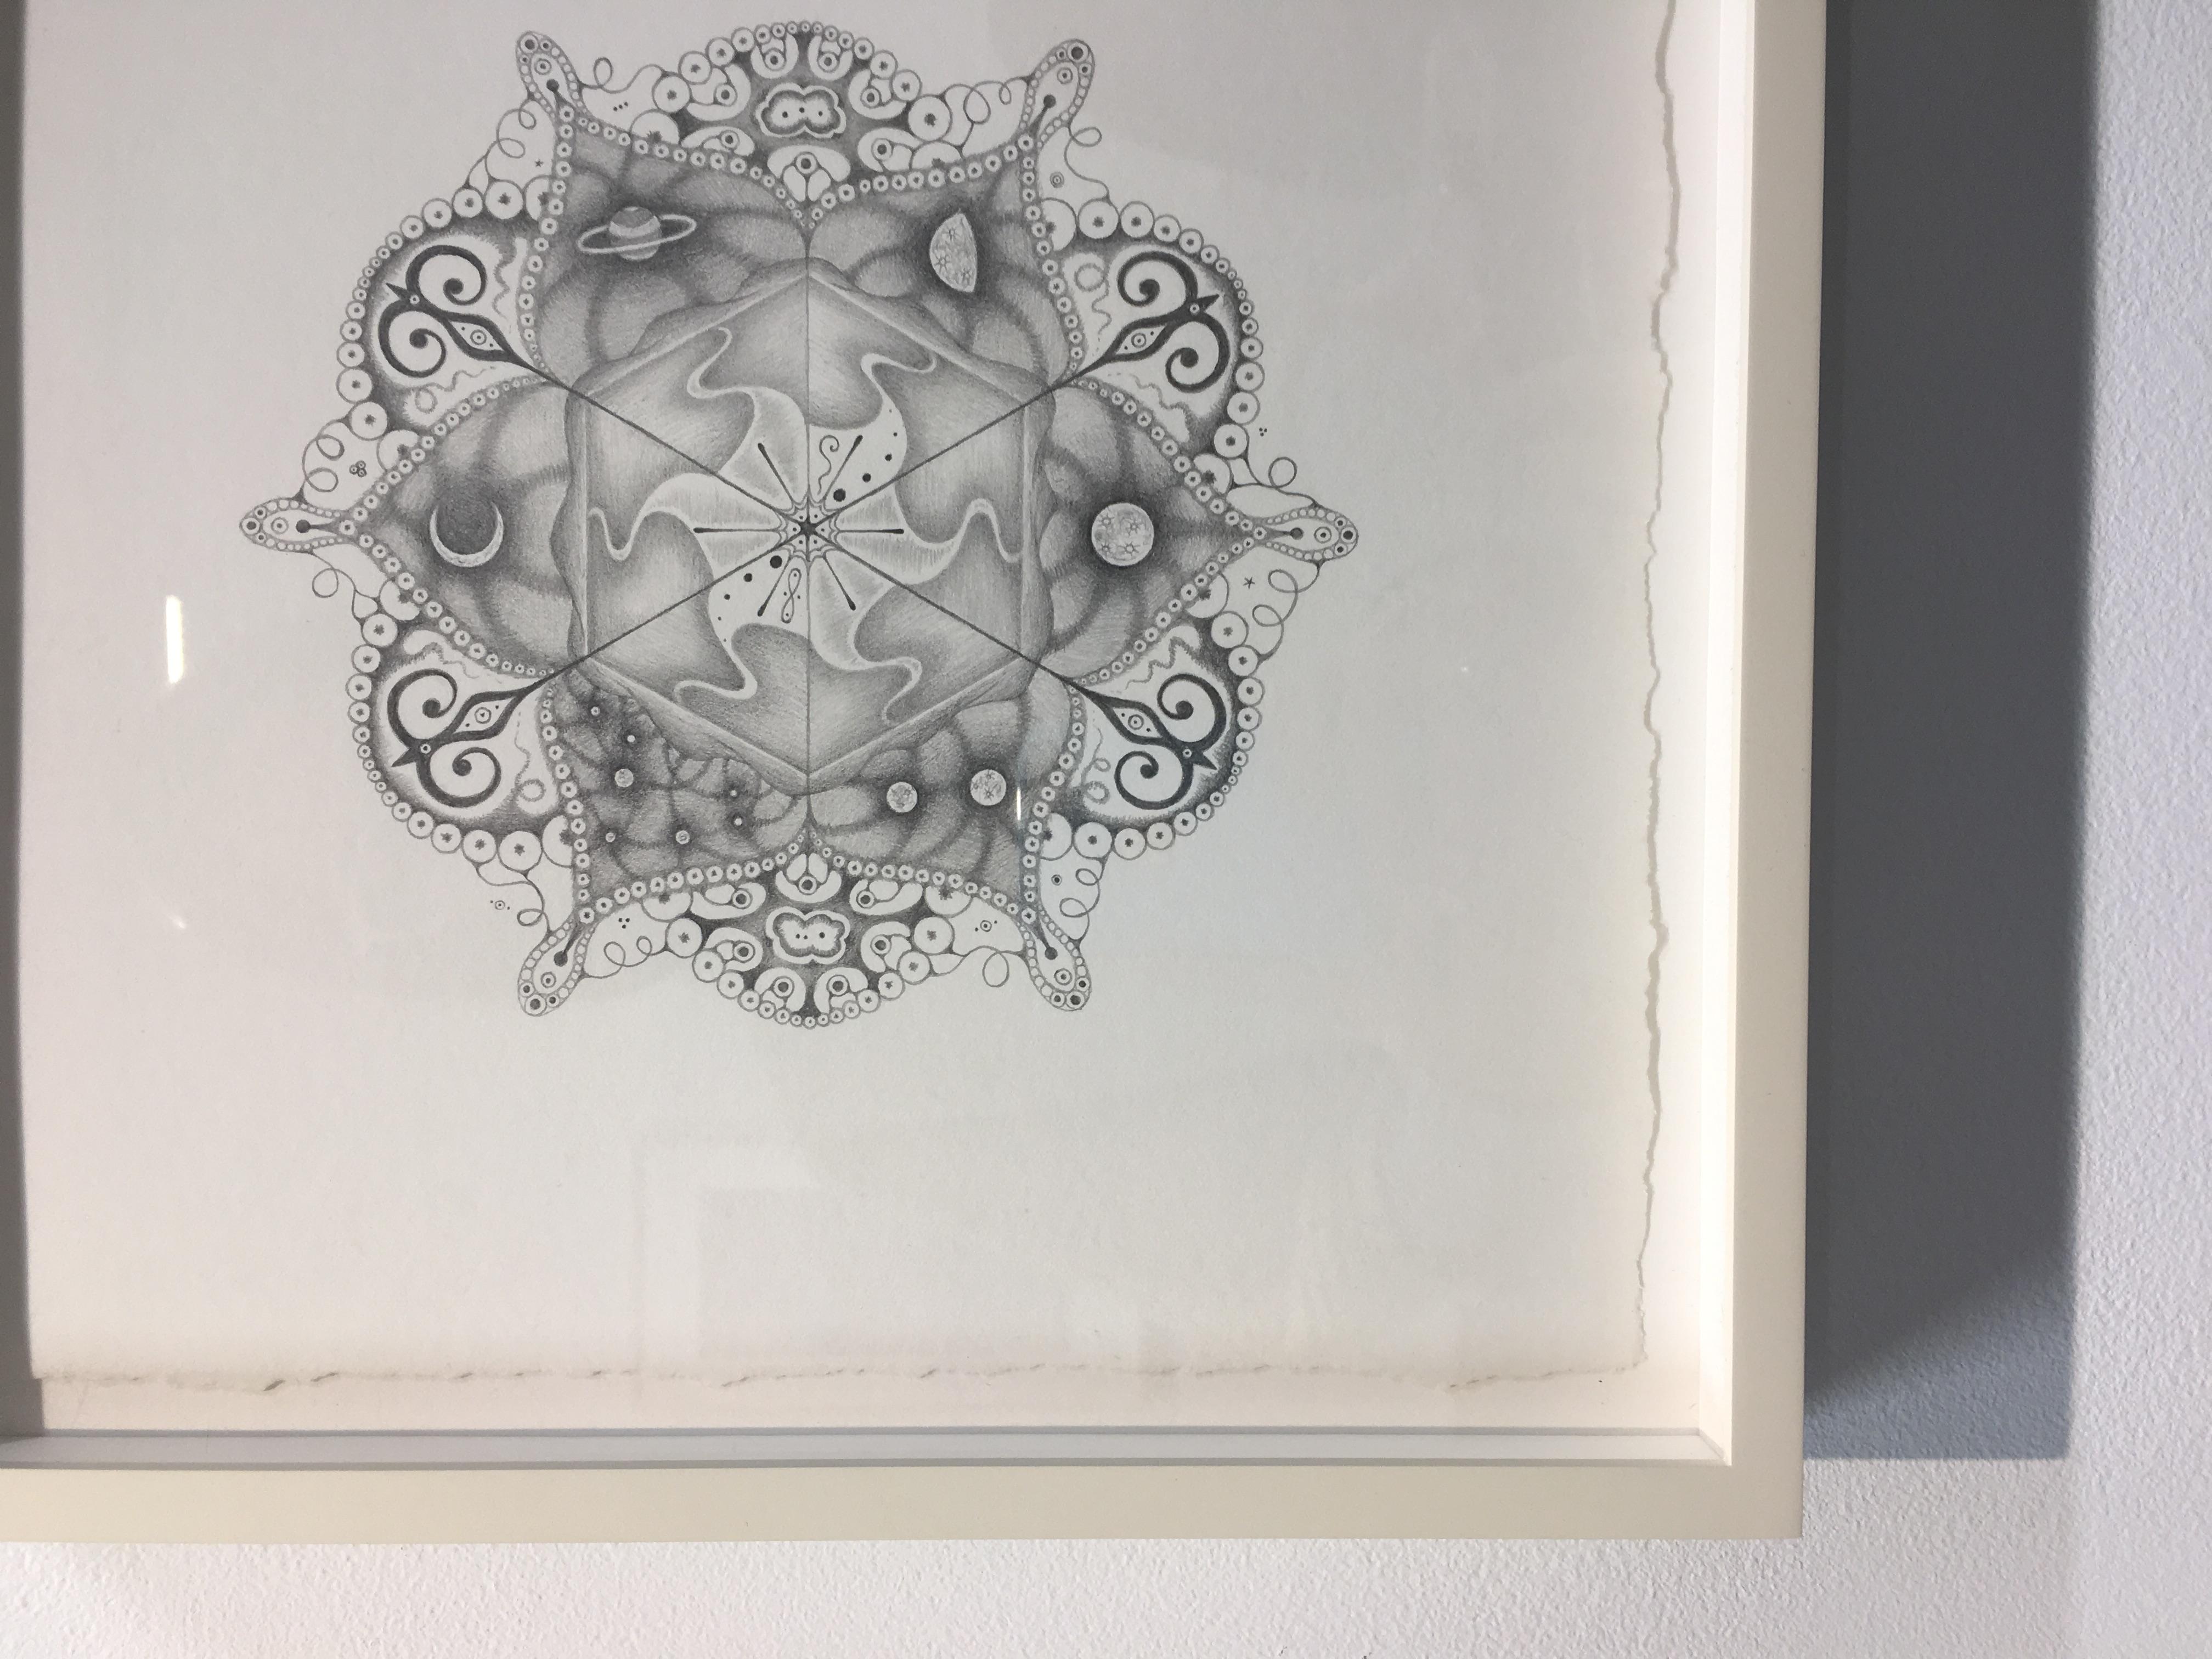 Snowflakes 108 Matrix, Planet and Crescent Moon Mandala Pencil Drawing - Contemporary Art by Michiyo Ihara